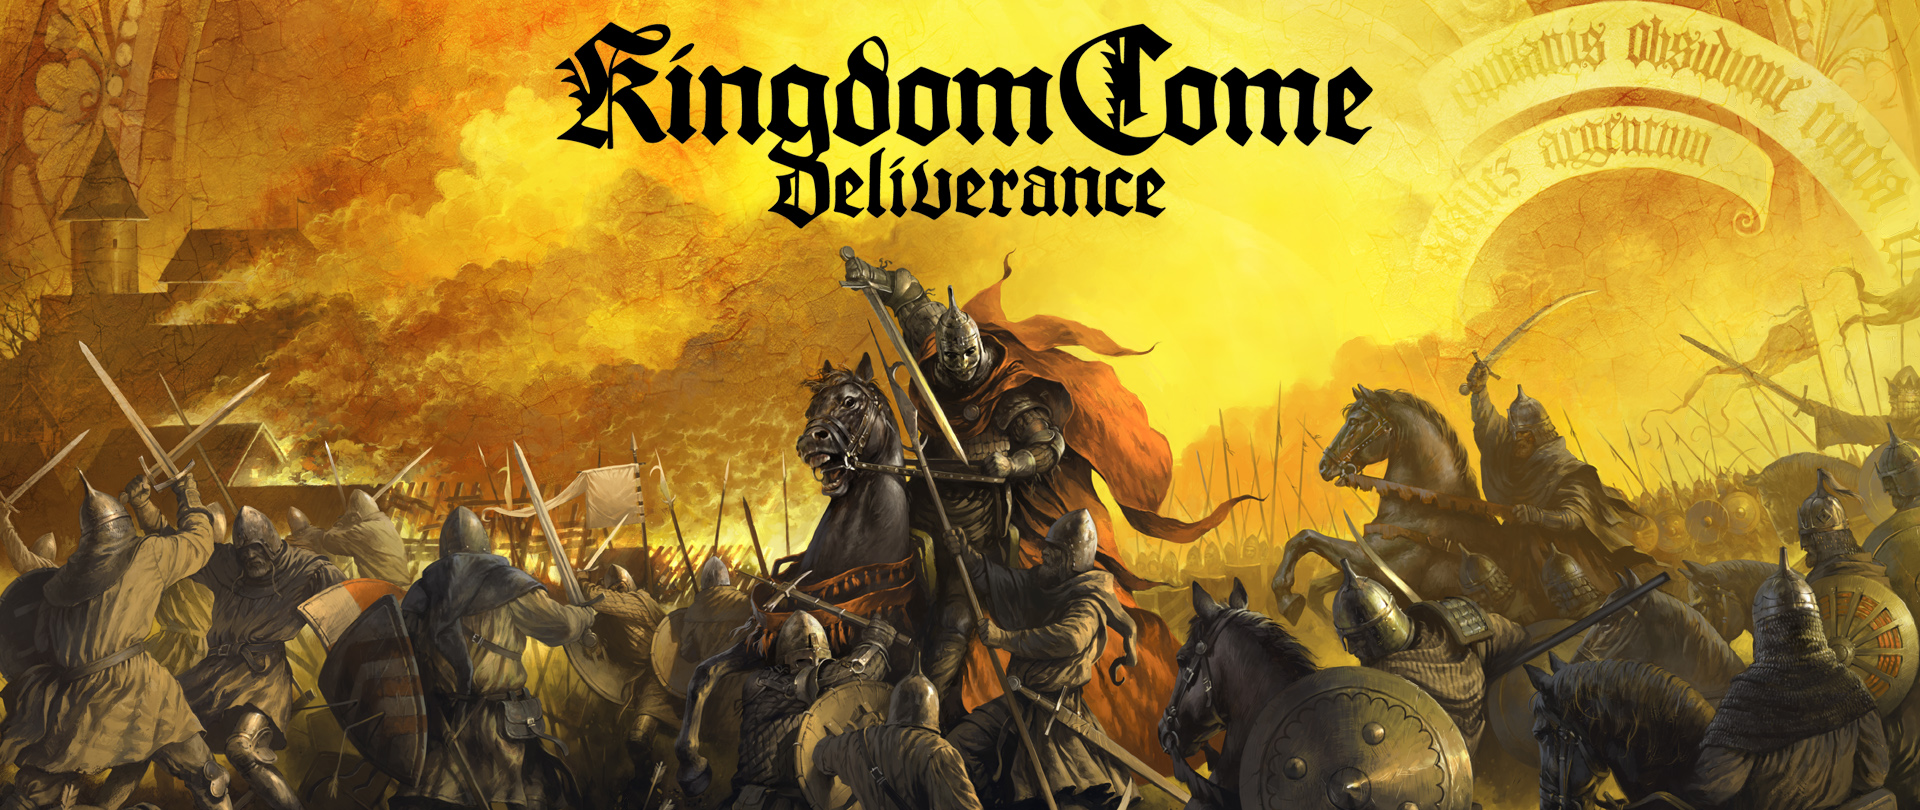 La absolución llega a Kingdom Come Deliverance | Ya disponible el parche 1.5